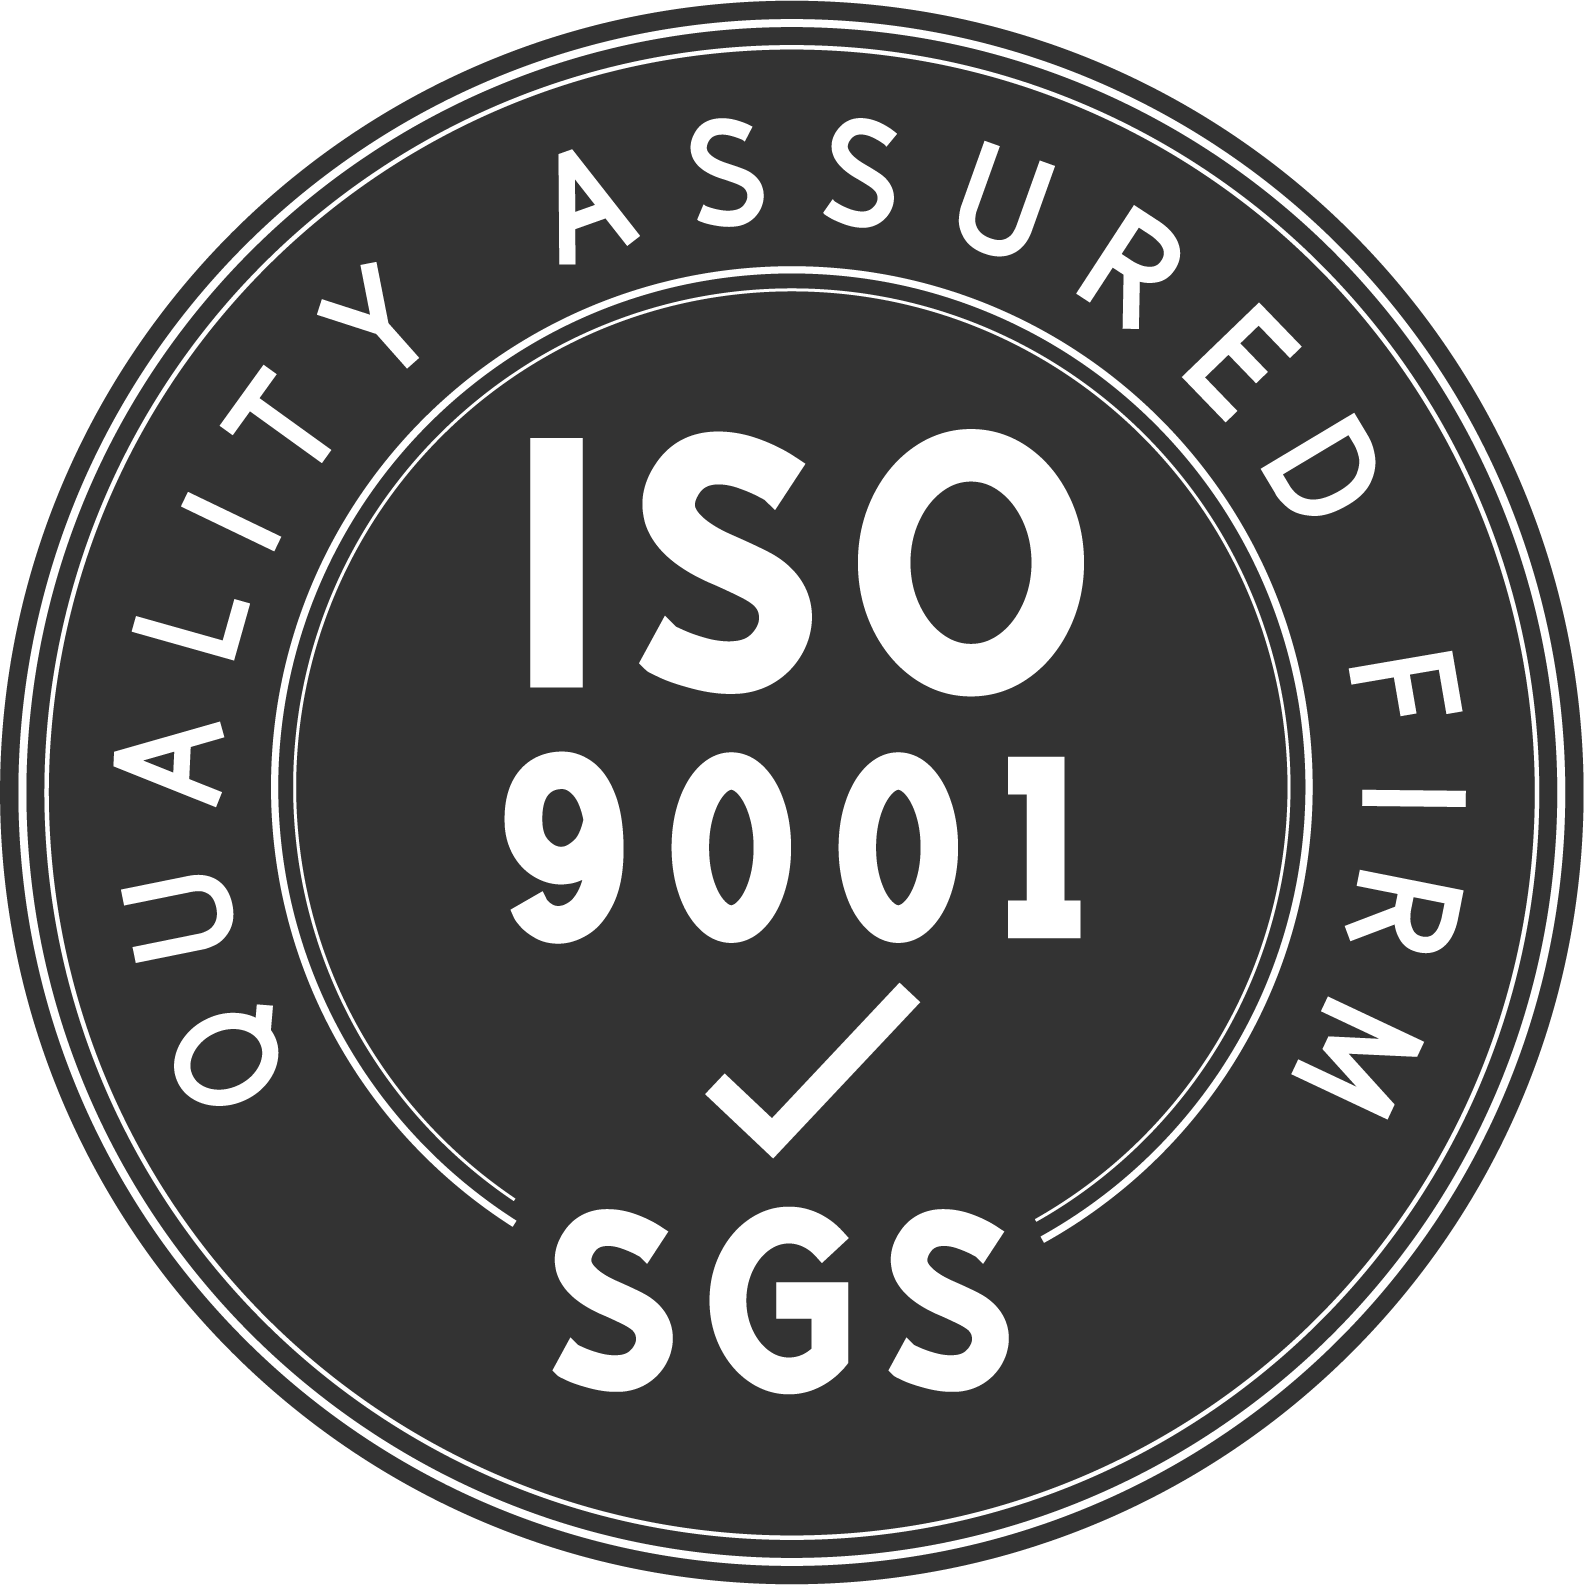 Нашата фабрика е ISO9001:2005 сертифициран производител на висококвалитетни производи